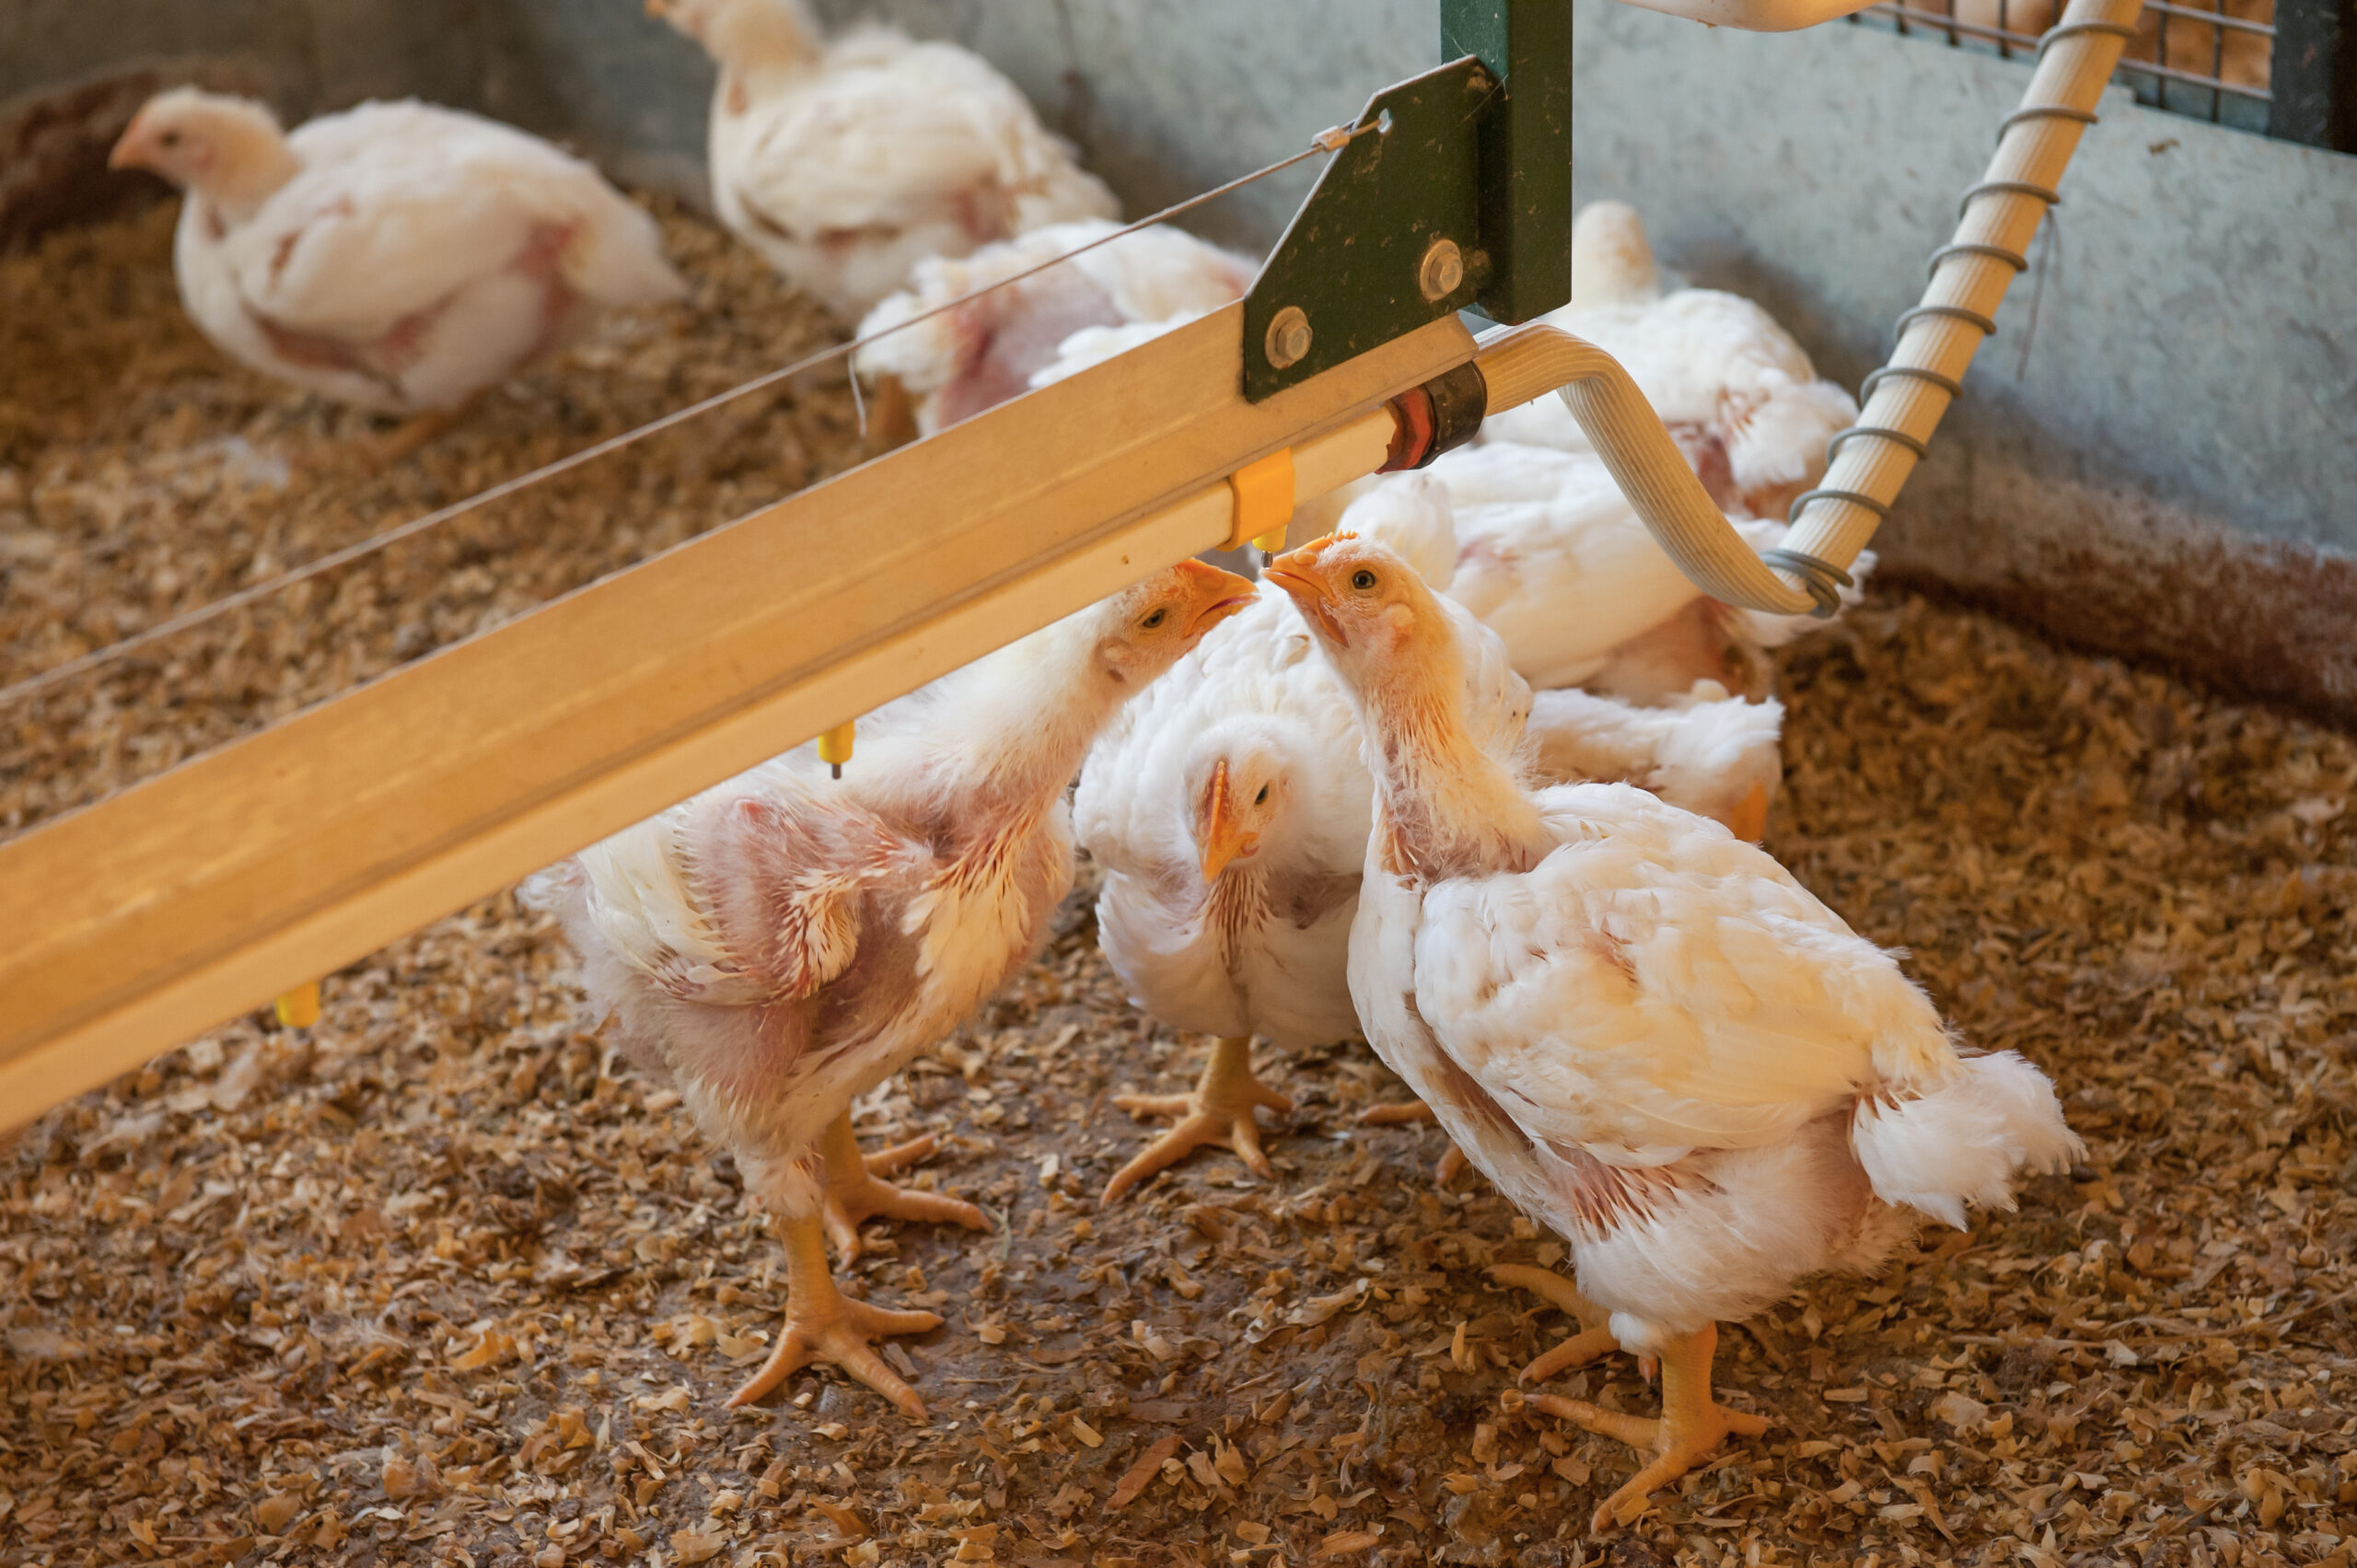 Preocupación por casos de influenza aviar: la FAO activó protocolos de emergencia en la región